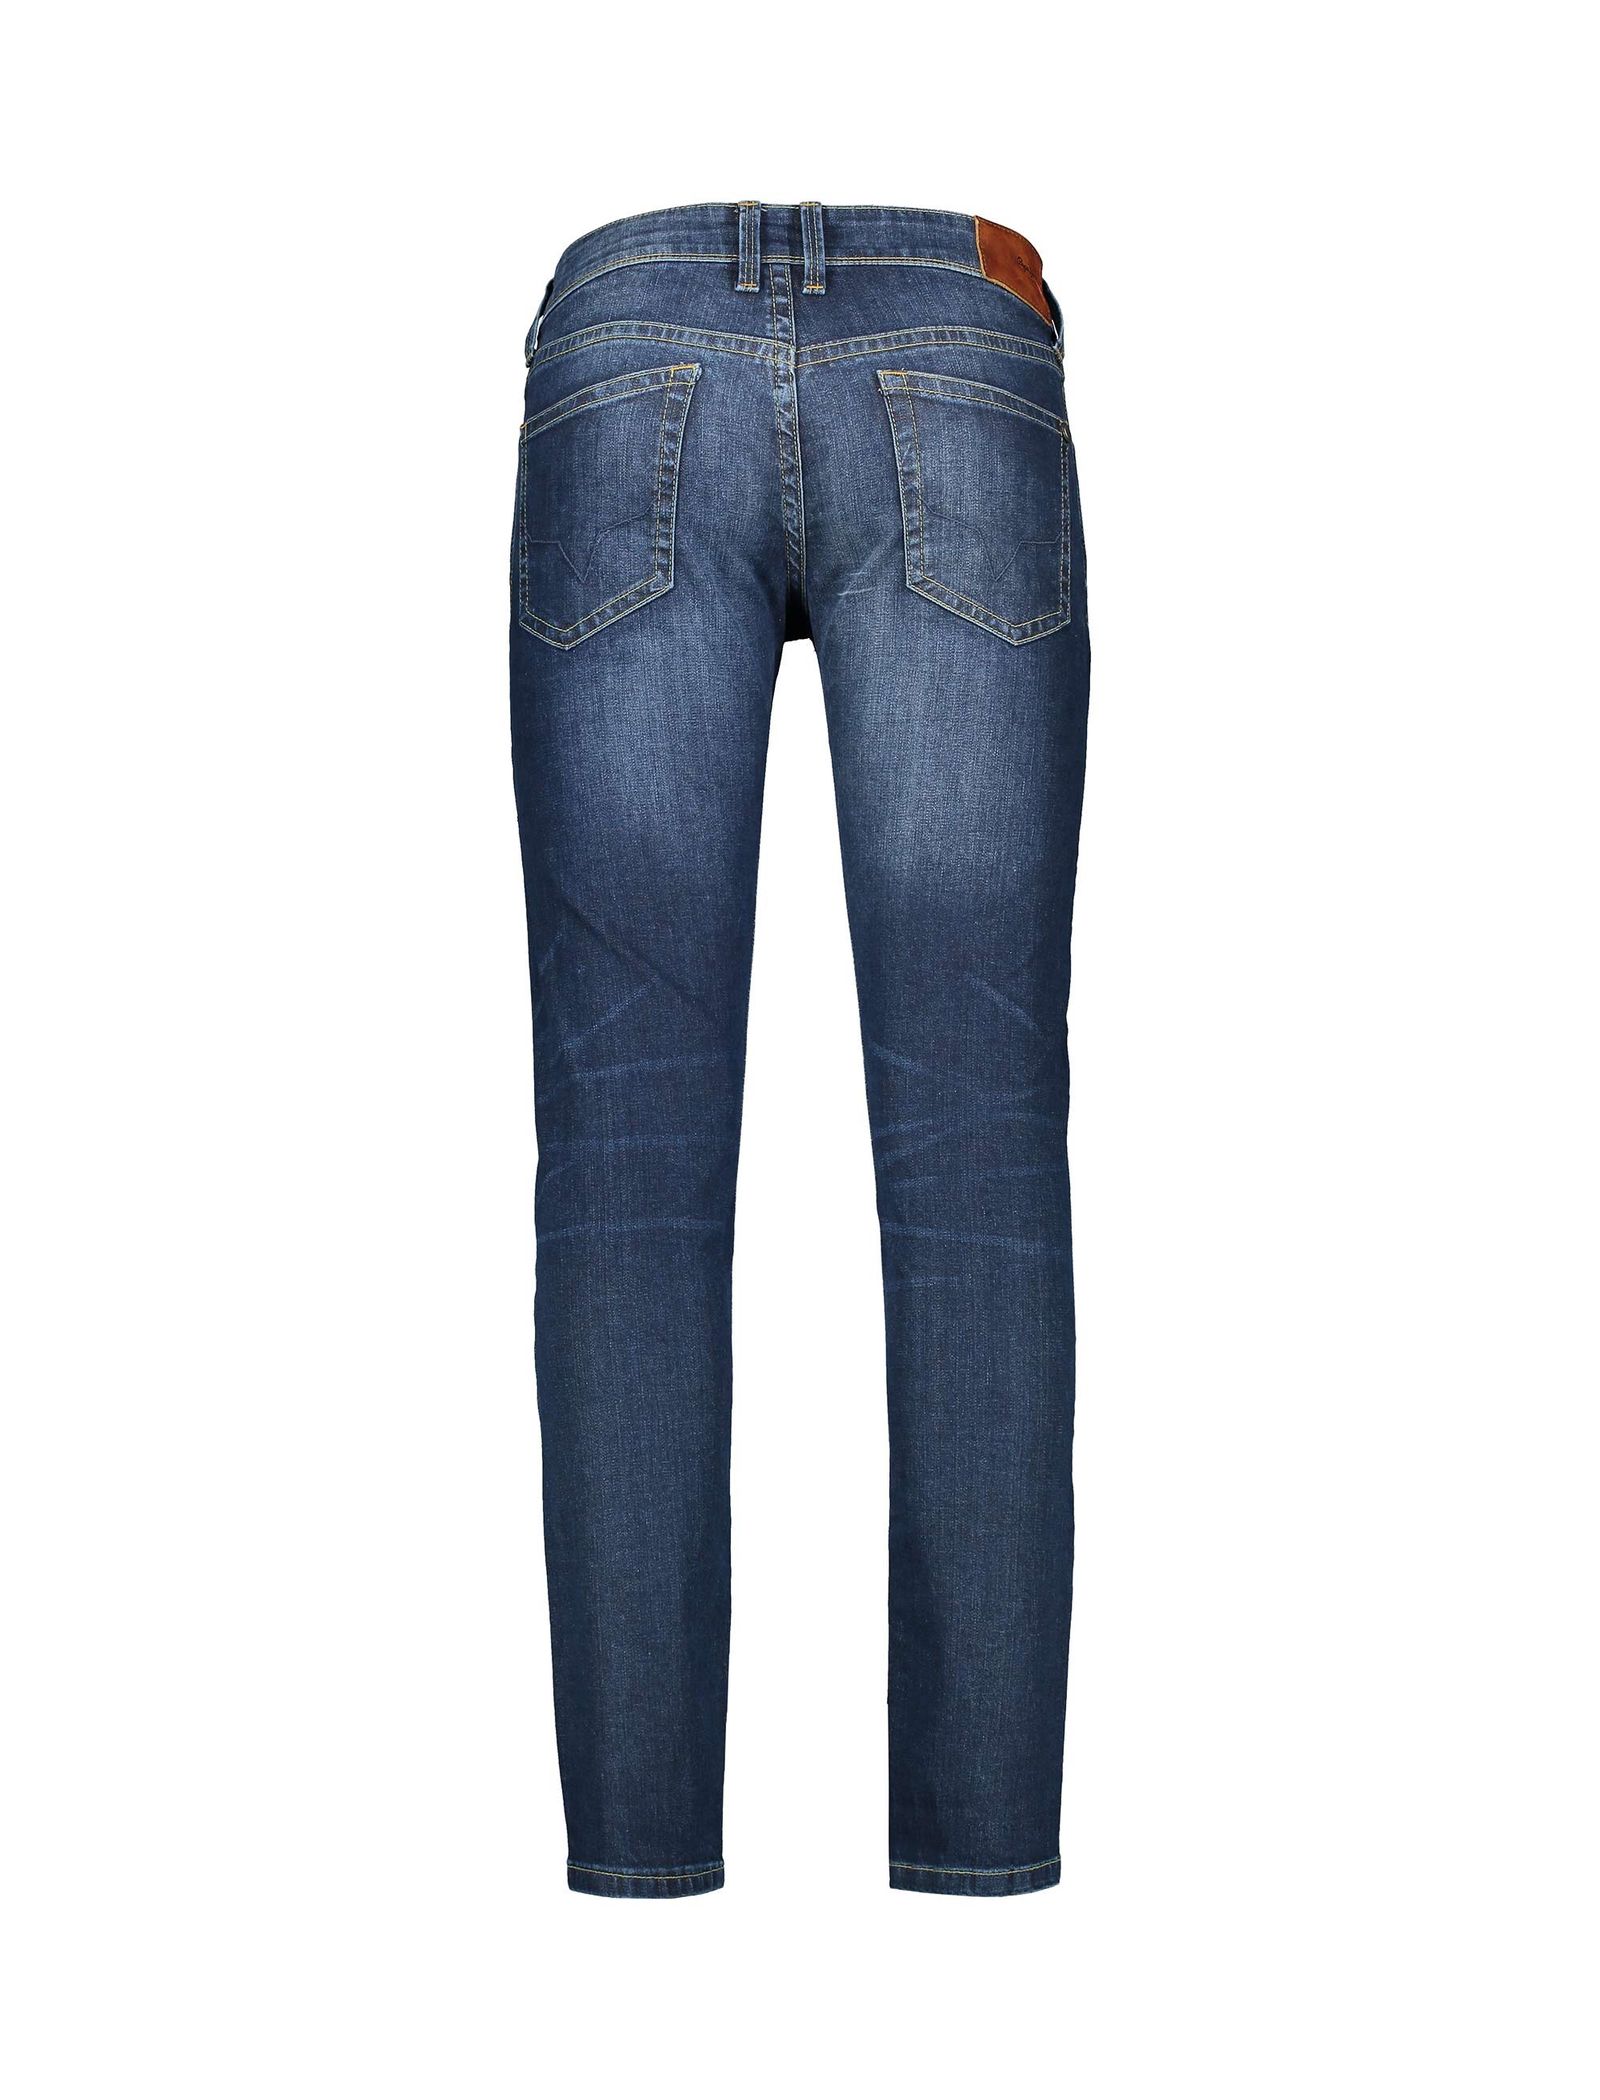 شلوار جین جذب مردانه - پپه جینز - آبي تيره - 3